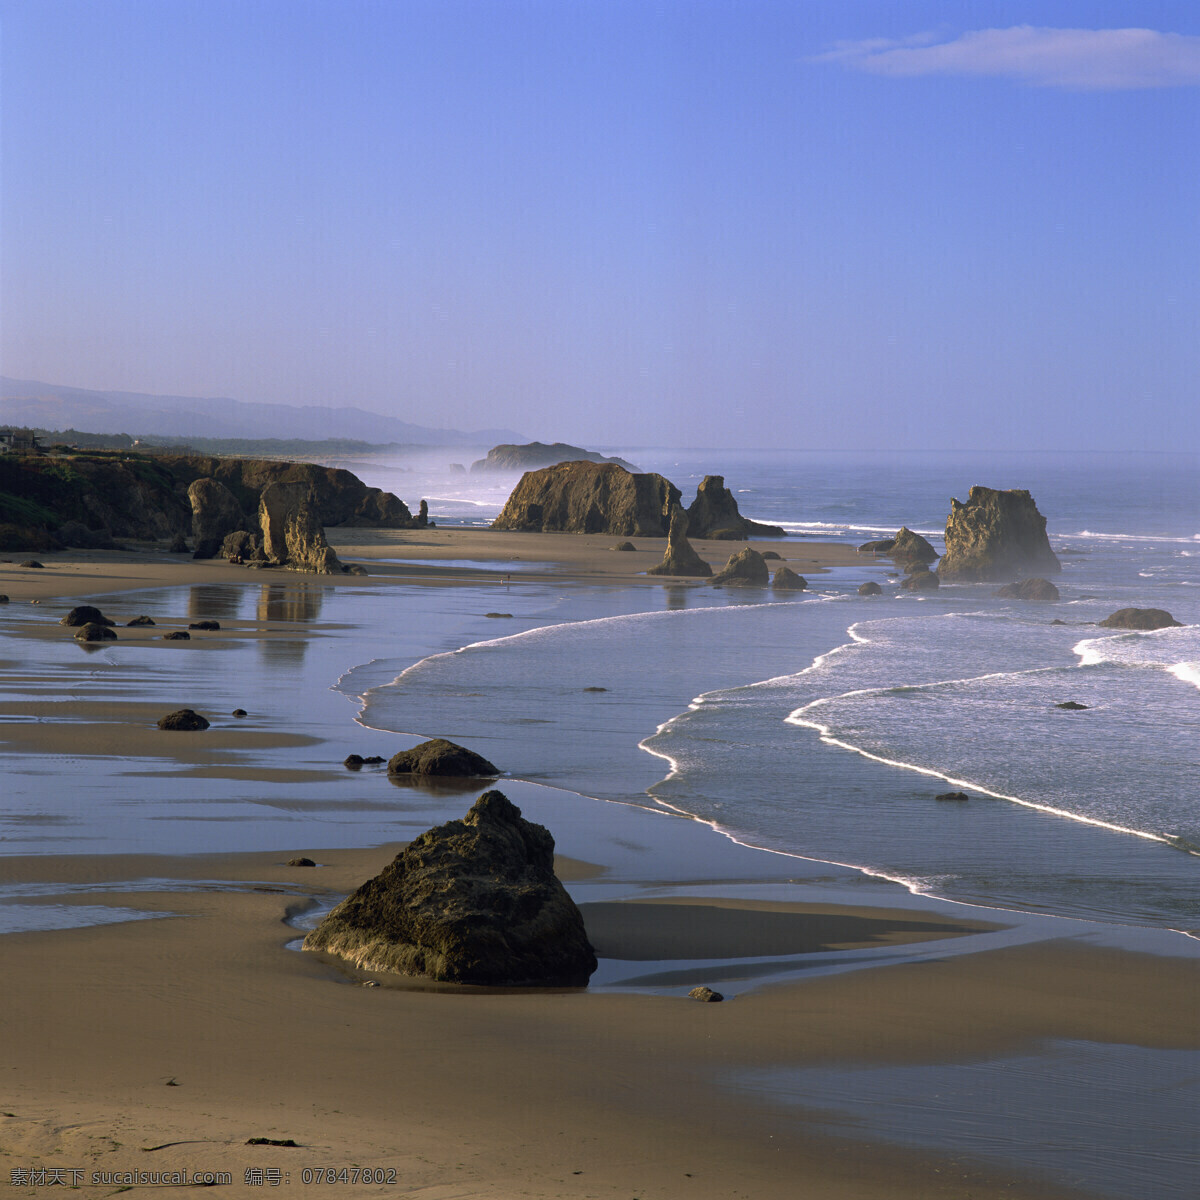 海岸 潮水 自然景观 景色 景光 蓝天 白云 大海 深蓝色 石头 岩石 沙滩 浪花 高清图片 大海图片 风景图片